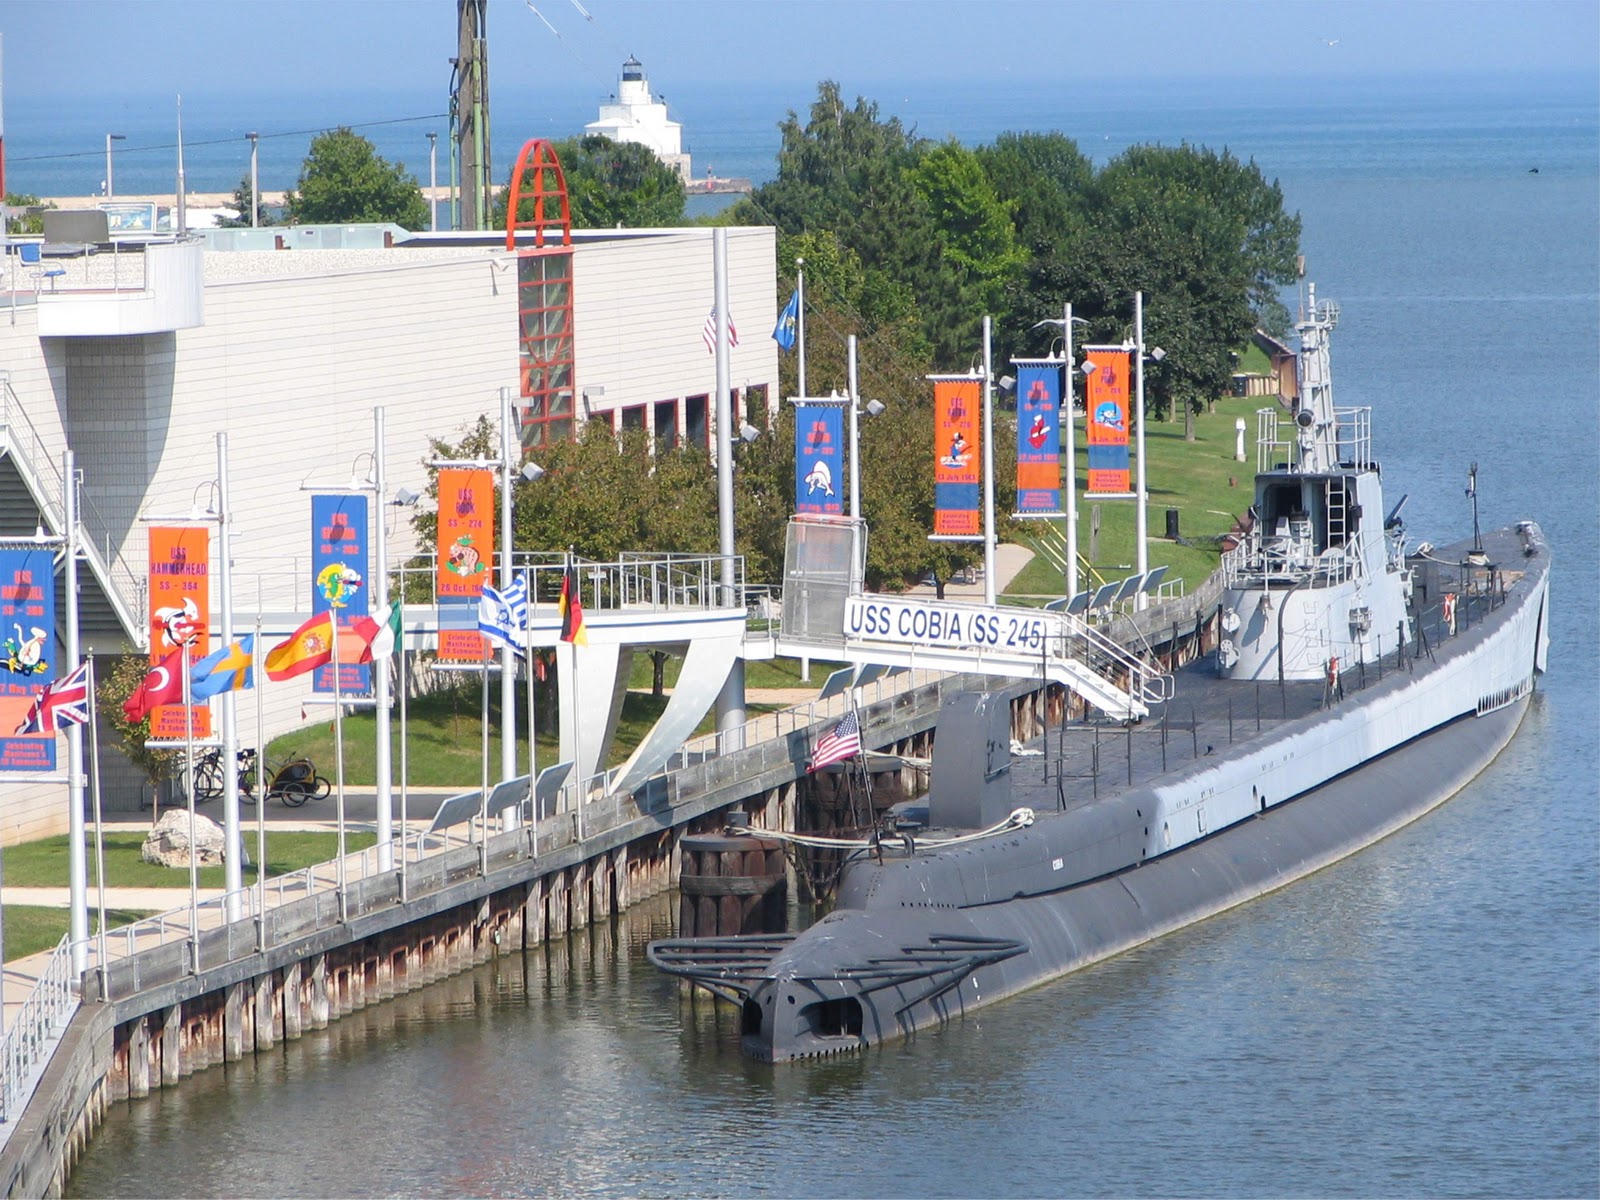 USS COBIA SS-245 "Clase Gato" Revell 1/180 "RESTAURADO" 0824517+usscobia